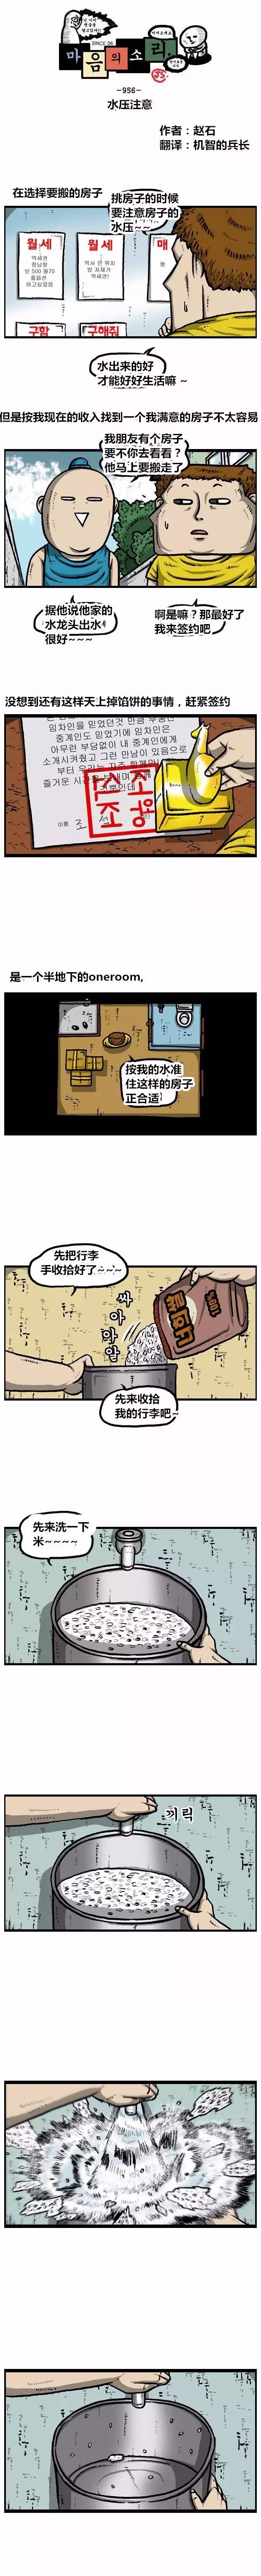 搞笑漫畫《趙俊給趙石介紹了個新住處》 汽車 第1張